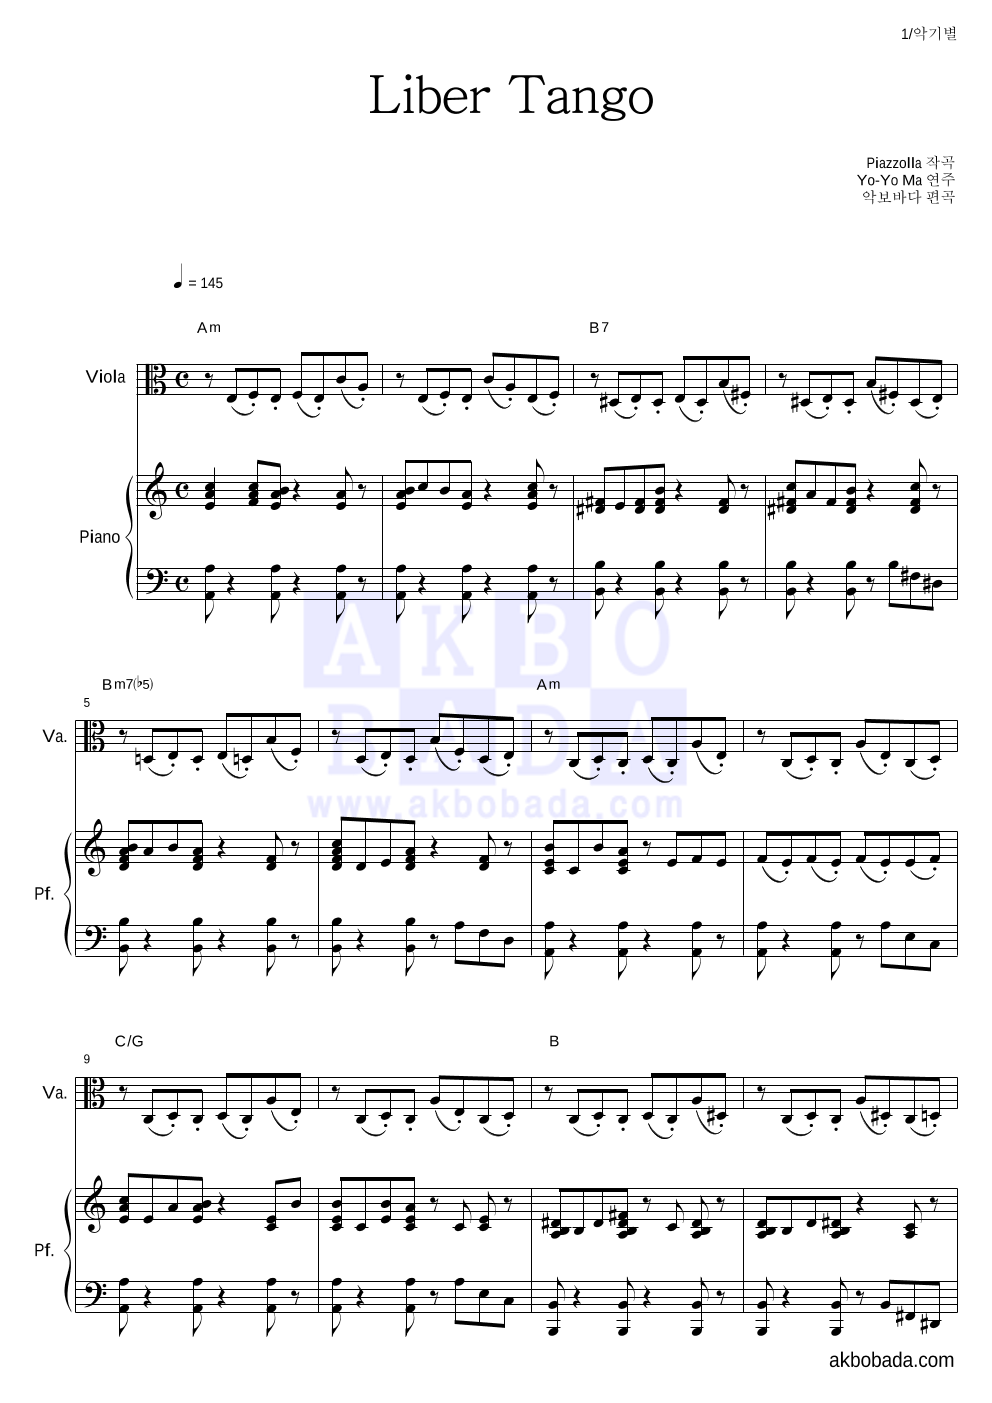 Yo-Yo Ma - Piazzolla - Libertango 비올라&피아노 악보 